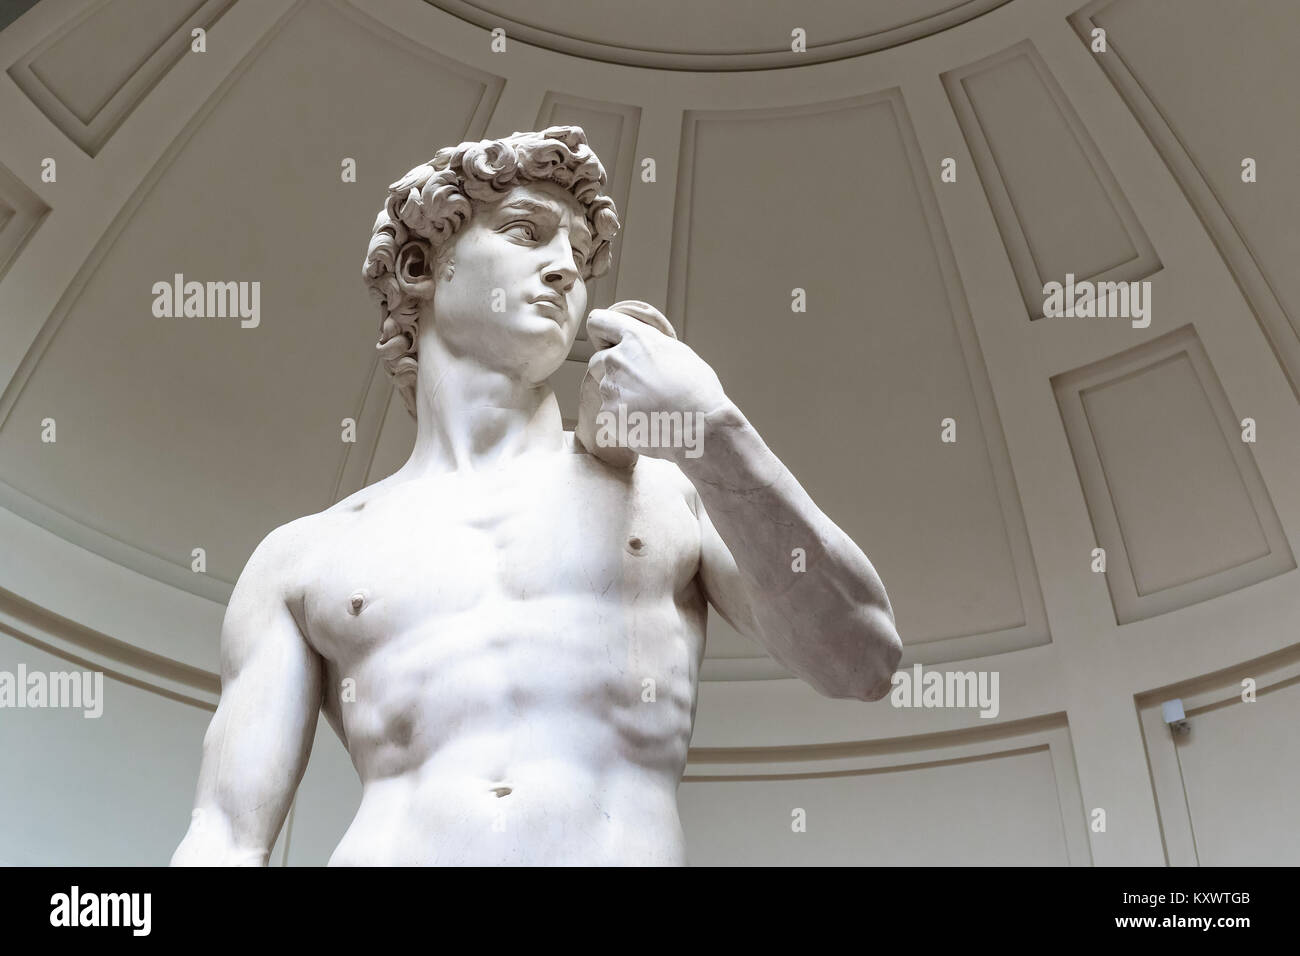 Italia, Florencia - Noviembre 28, 2017 - La estatua del David de Michelangelo en Florencia, Italia. Foto de stock